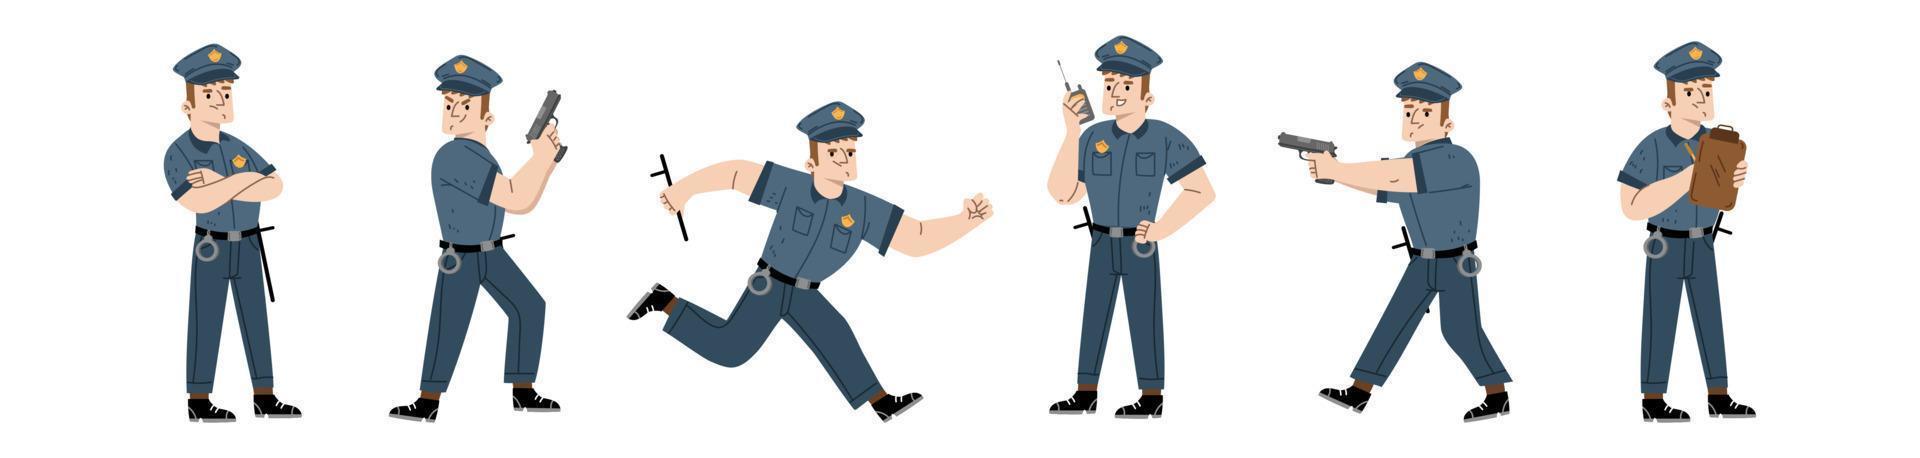 policial, policial ou personagem de guarda vetor